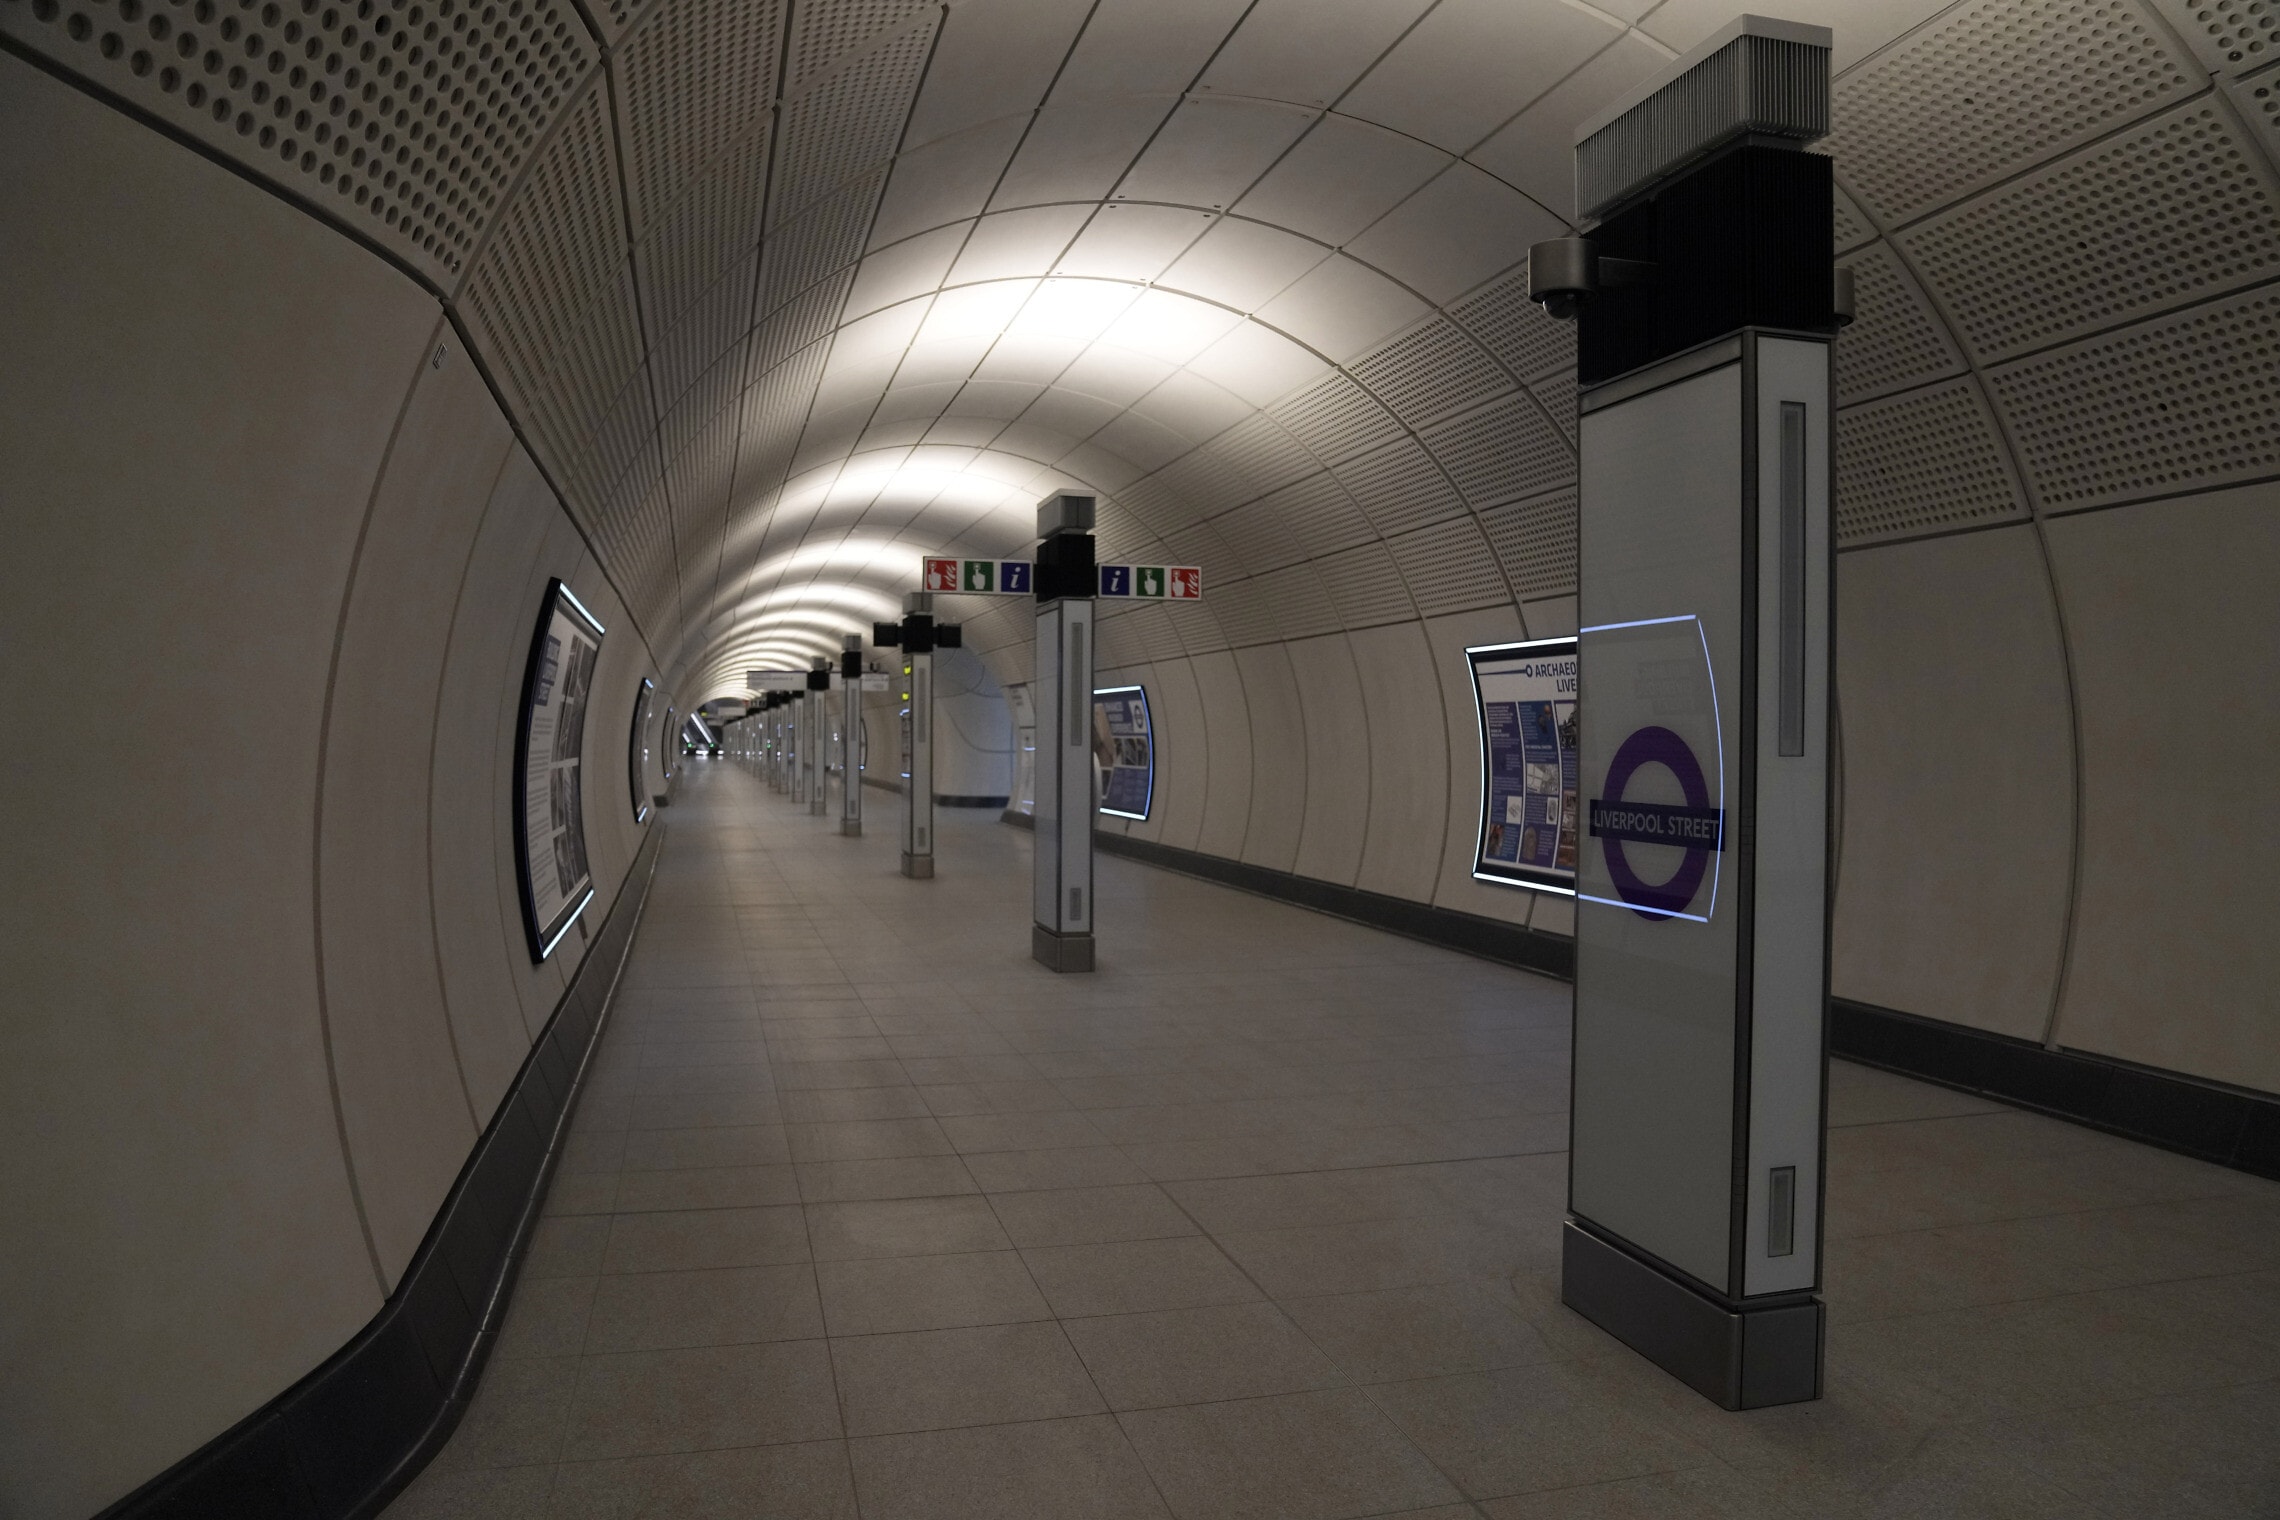 תחנת ליברפול סטריט בקו אליזבת בלונדון, 11 במאי 2022 (צילום: AP Photo/Alastair Grant)